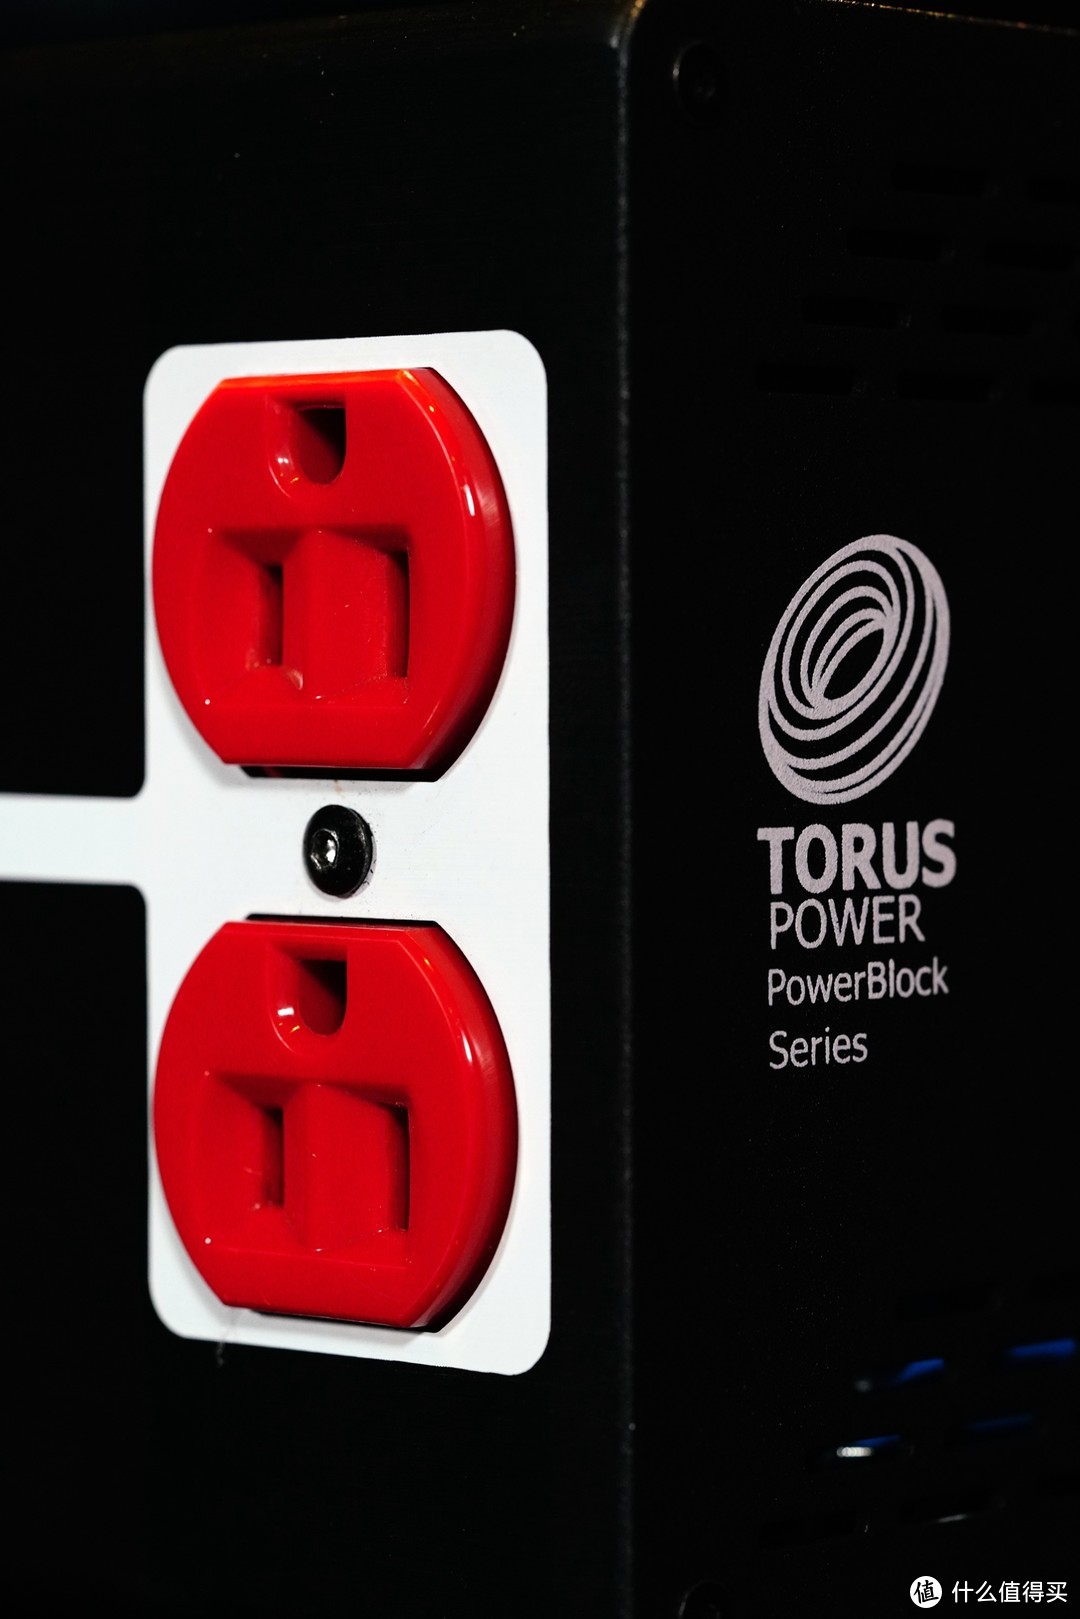 立竿见影 改观明显——TORUS POWER PB4 515R电源处理器